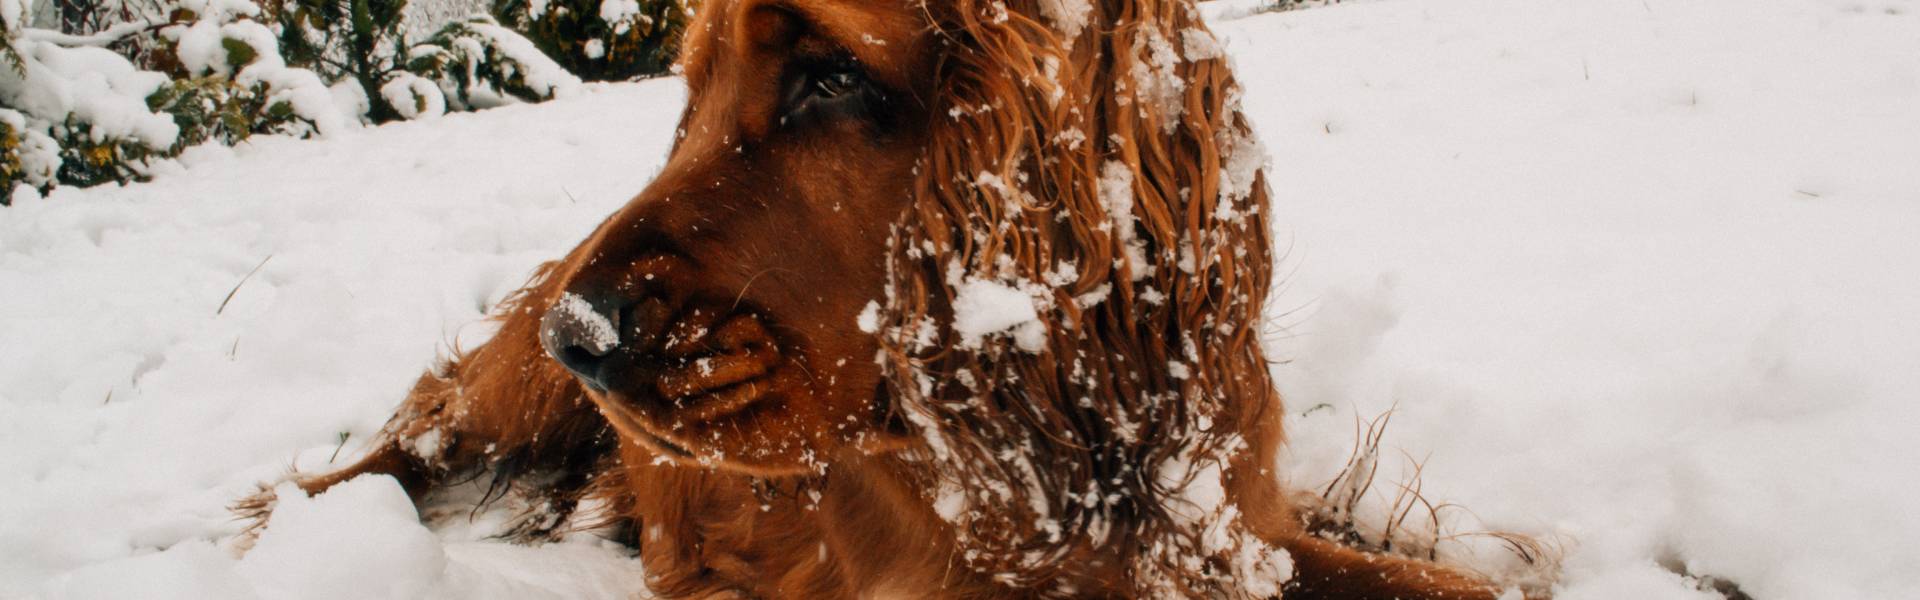 Savjet: Kupanje i šišanje psa po zimi, da ili ne?